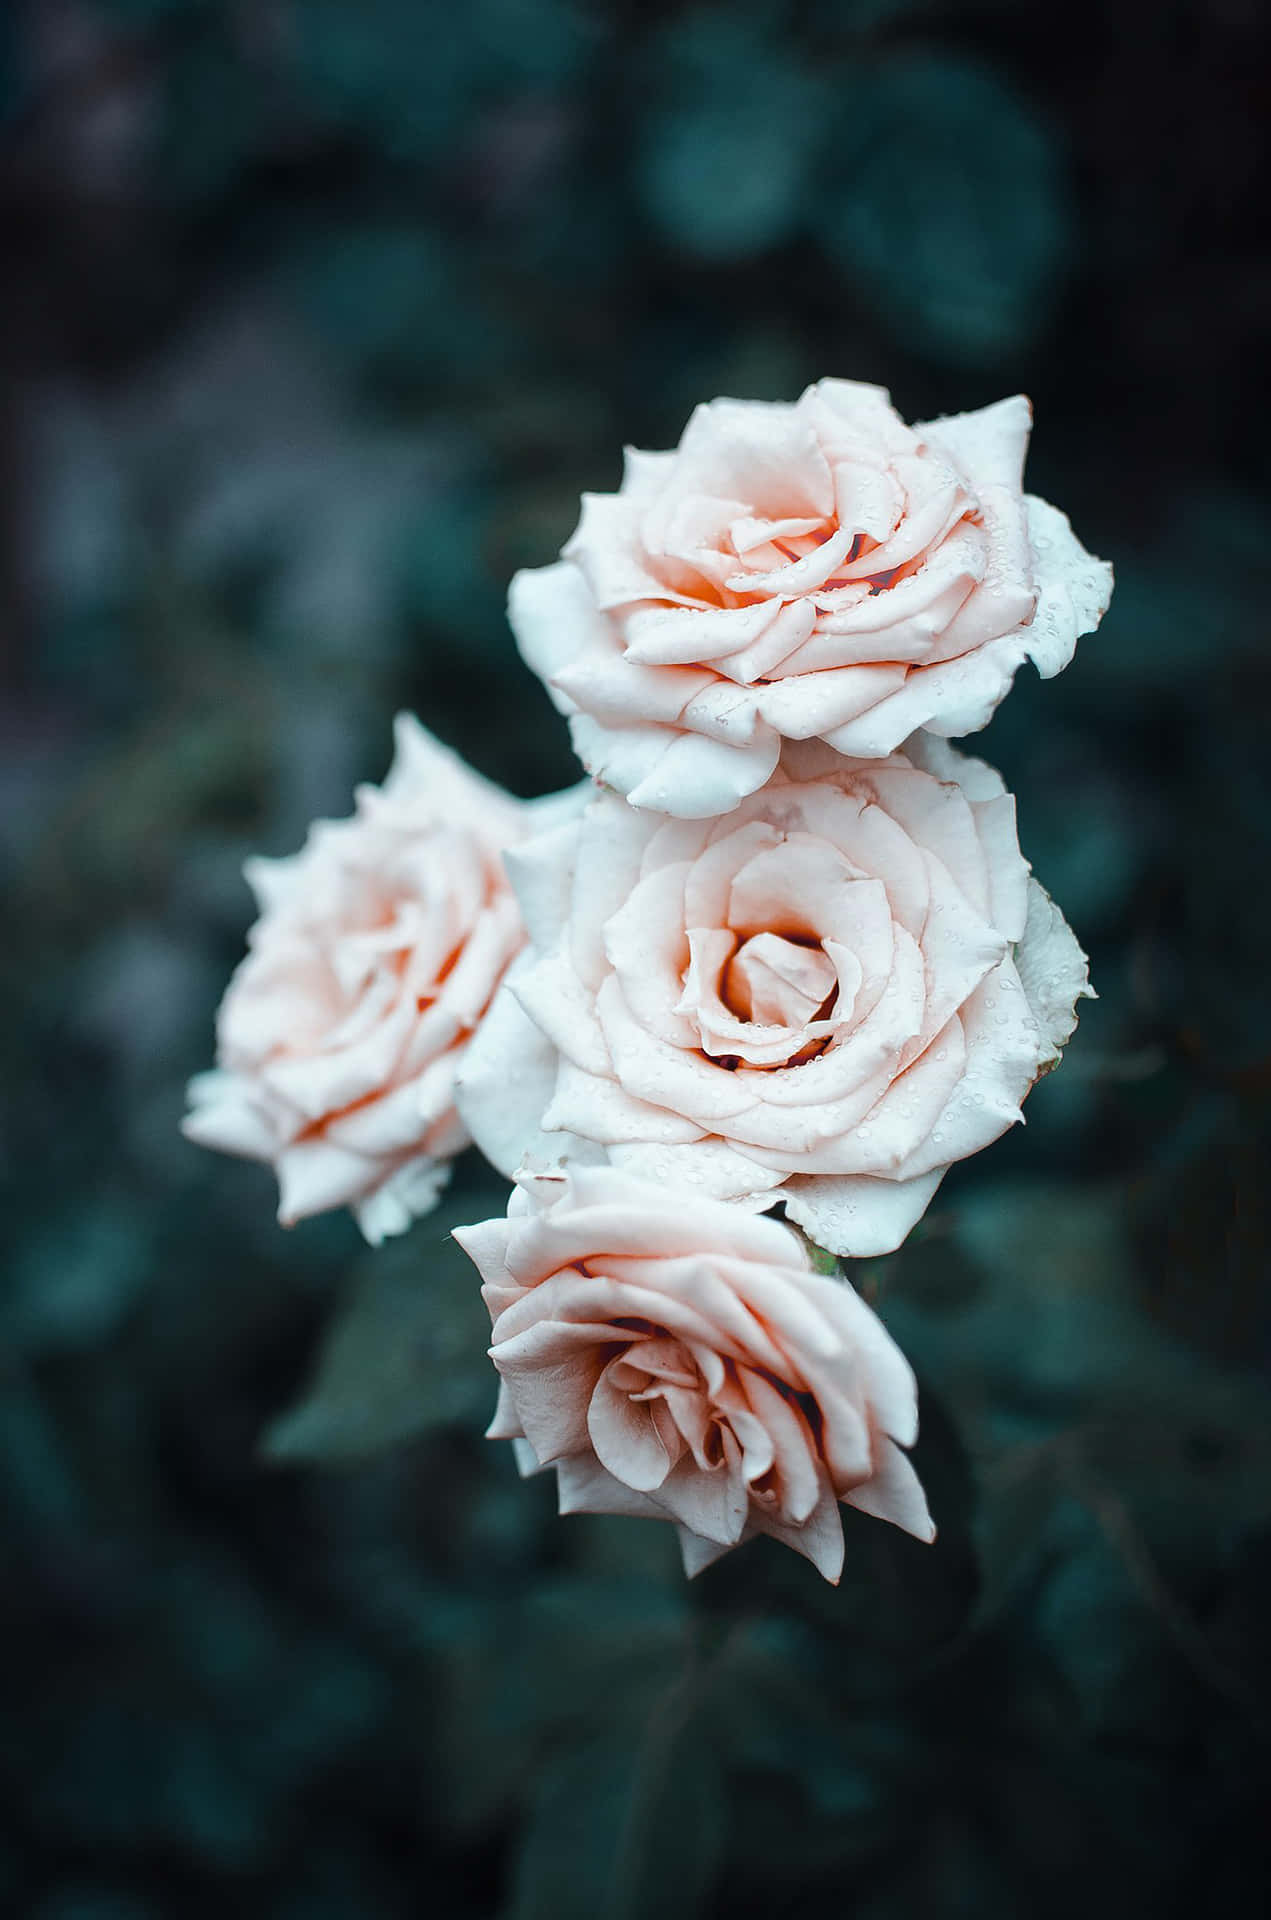 Et forførende buket af hvide roser.